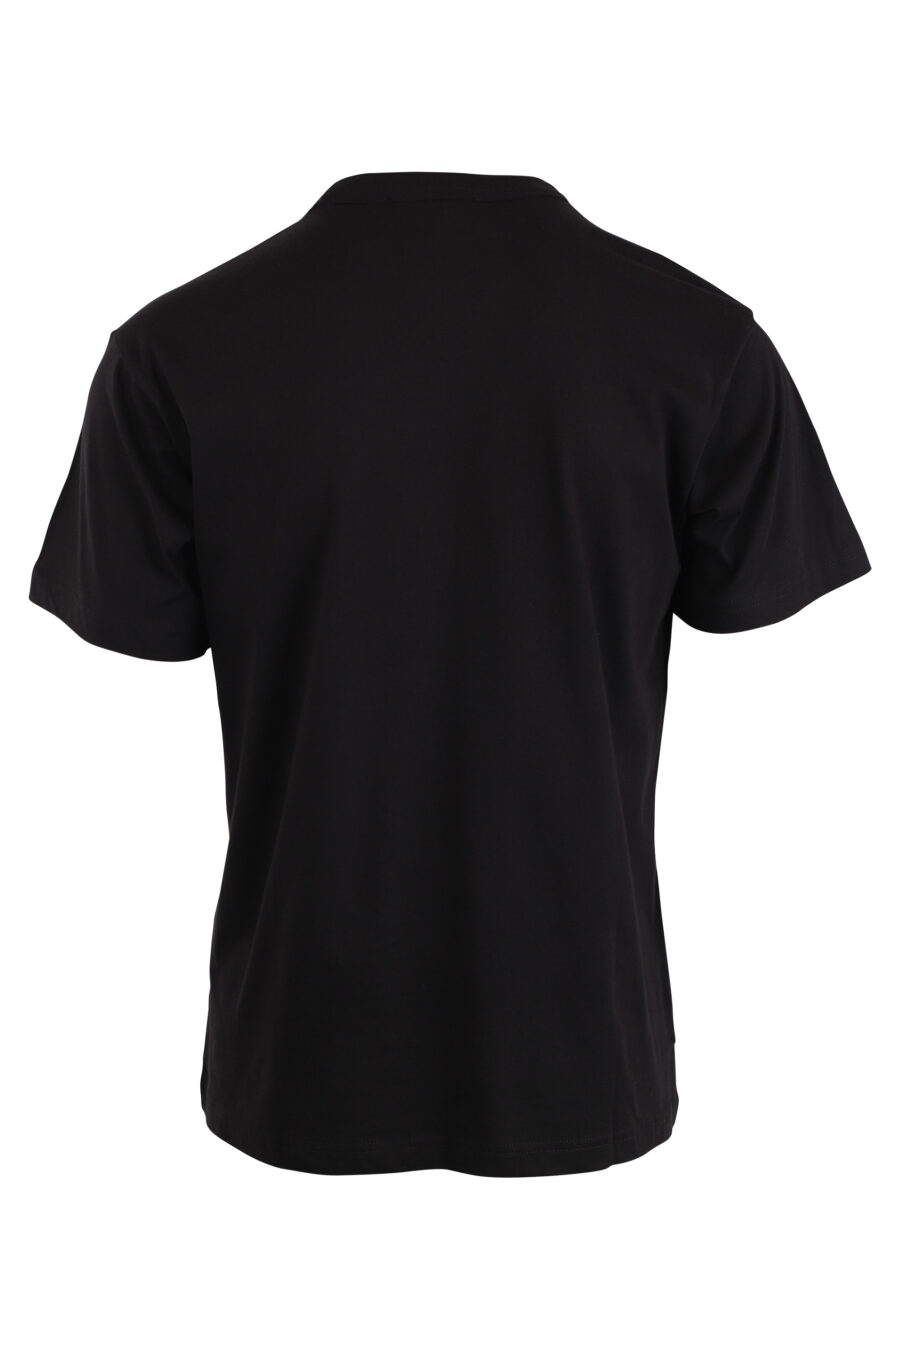 T-shirt noir avec logo carré au centre - IMG 4224